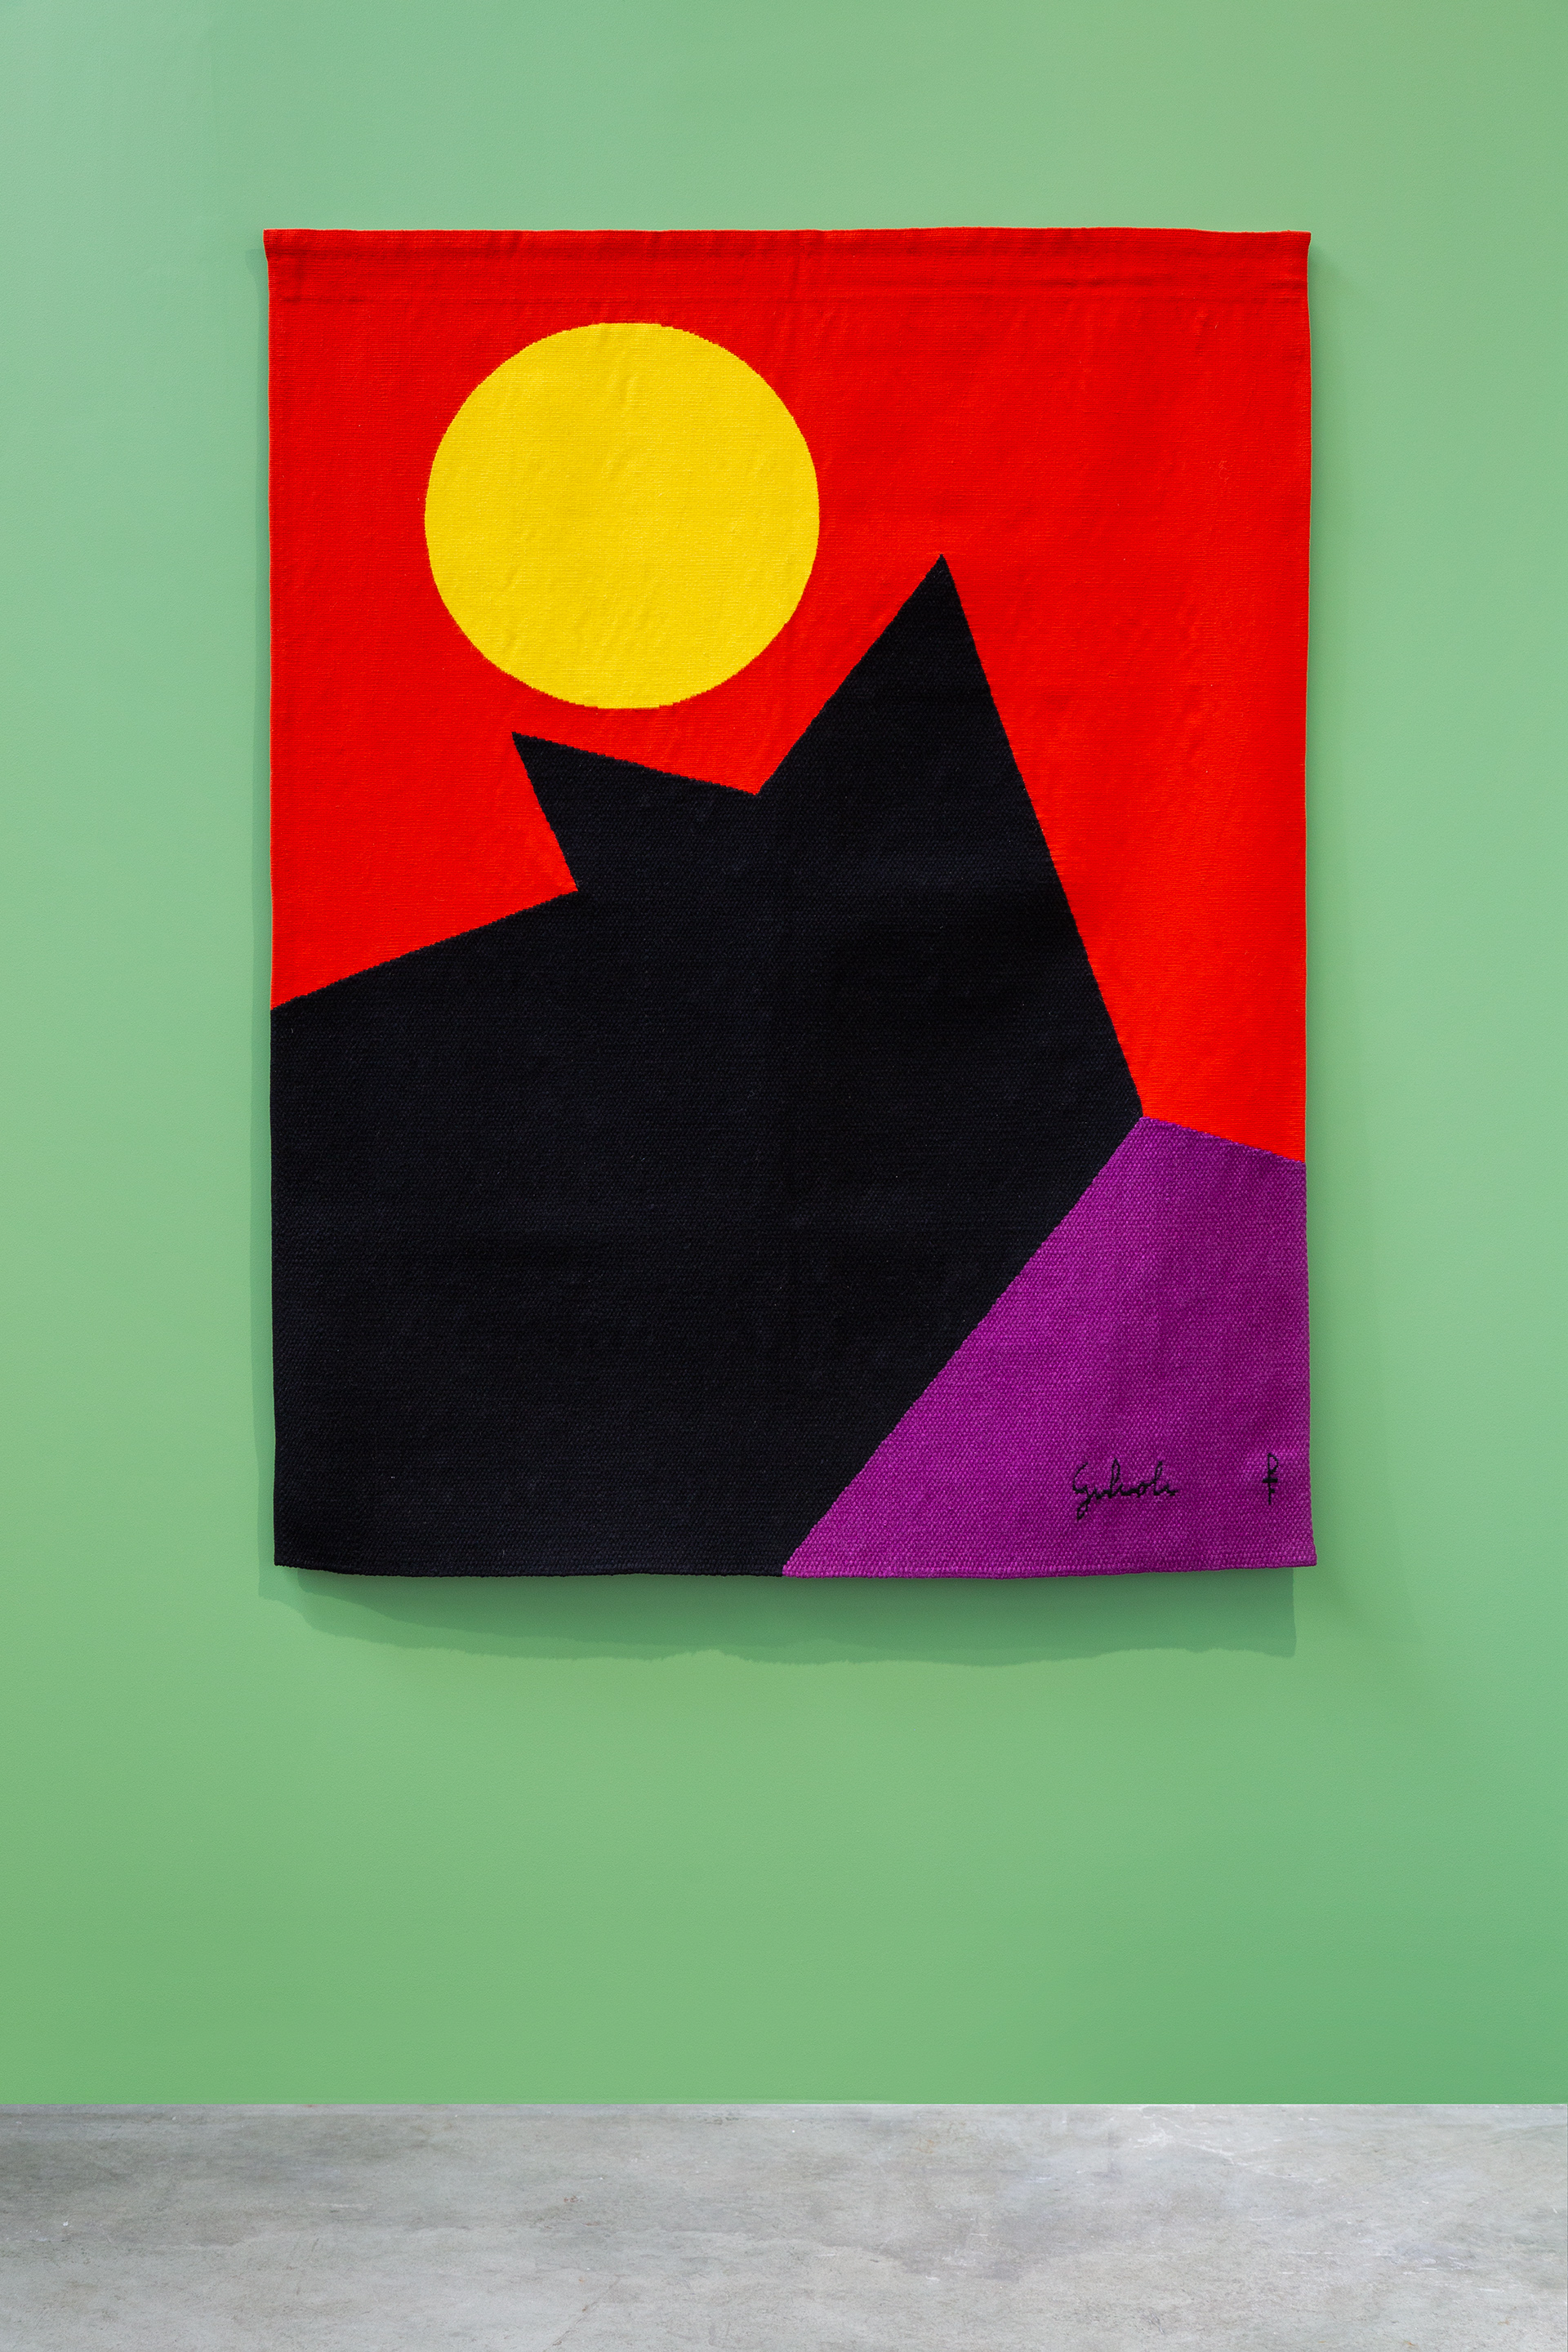 Textiles

Emile Gilioli, Djeuner de soleil, Basse-lisse, 165 x 128 cm

photographie EmilieVialet